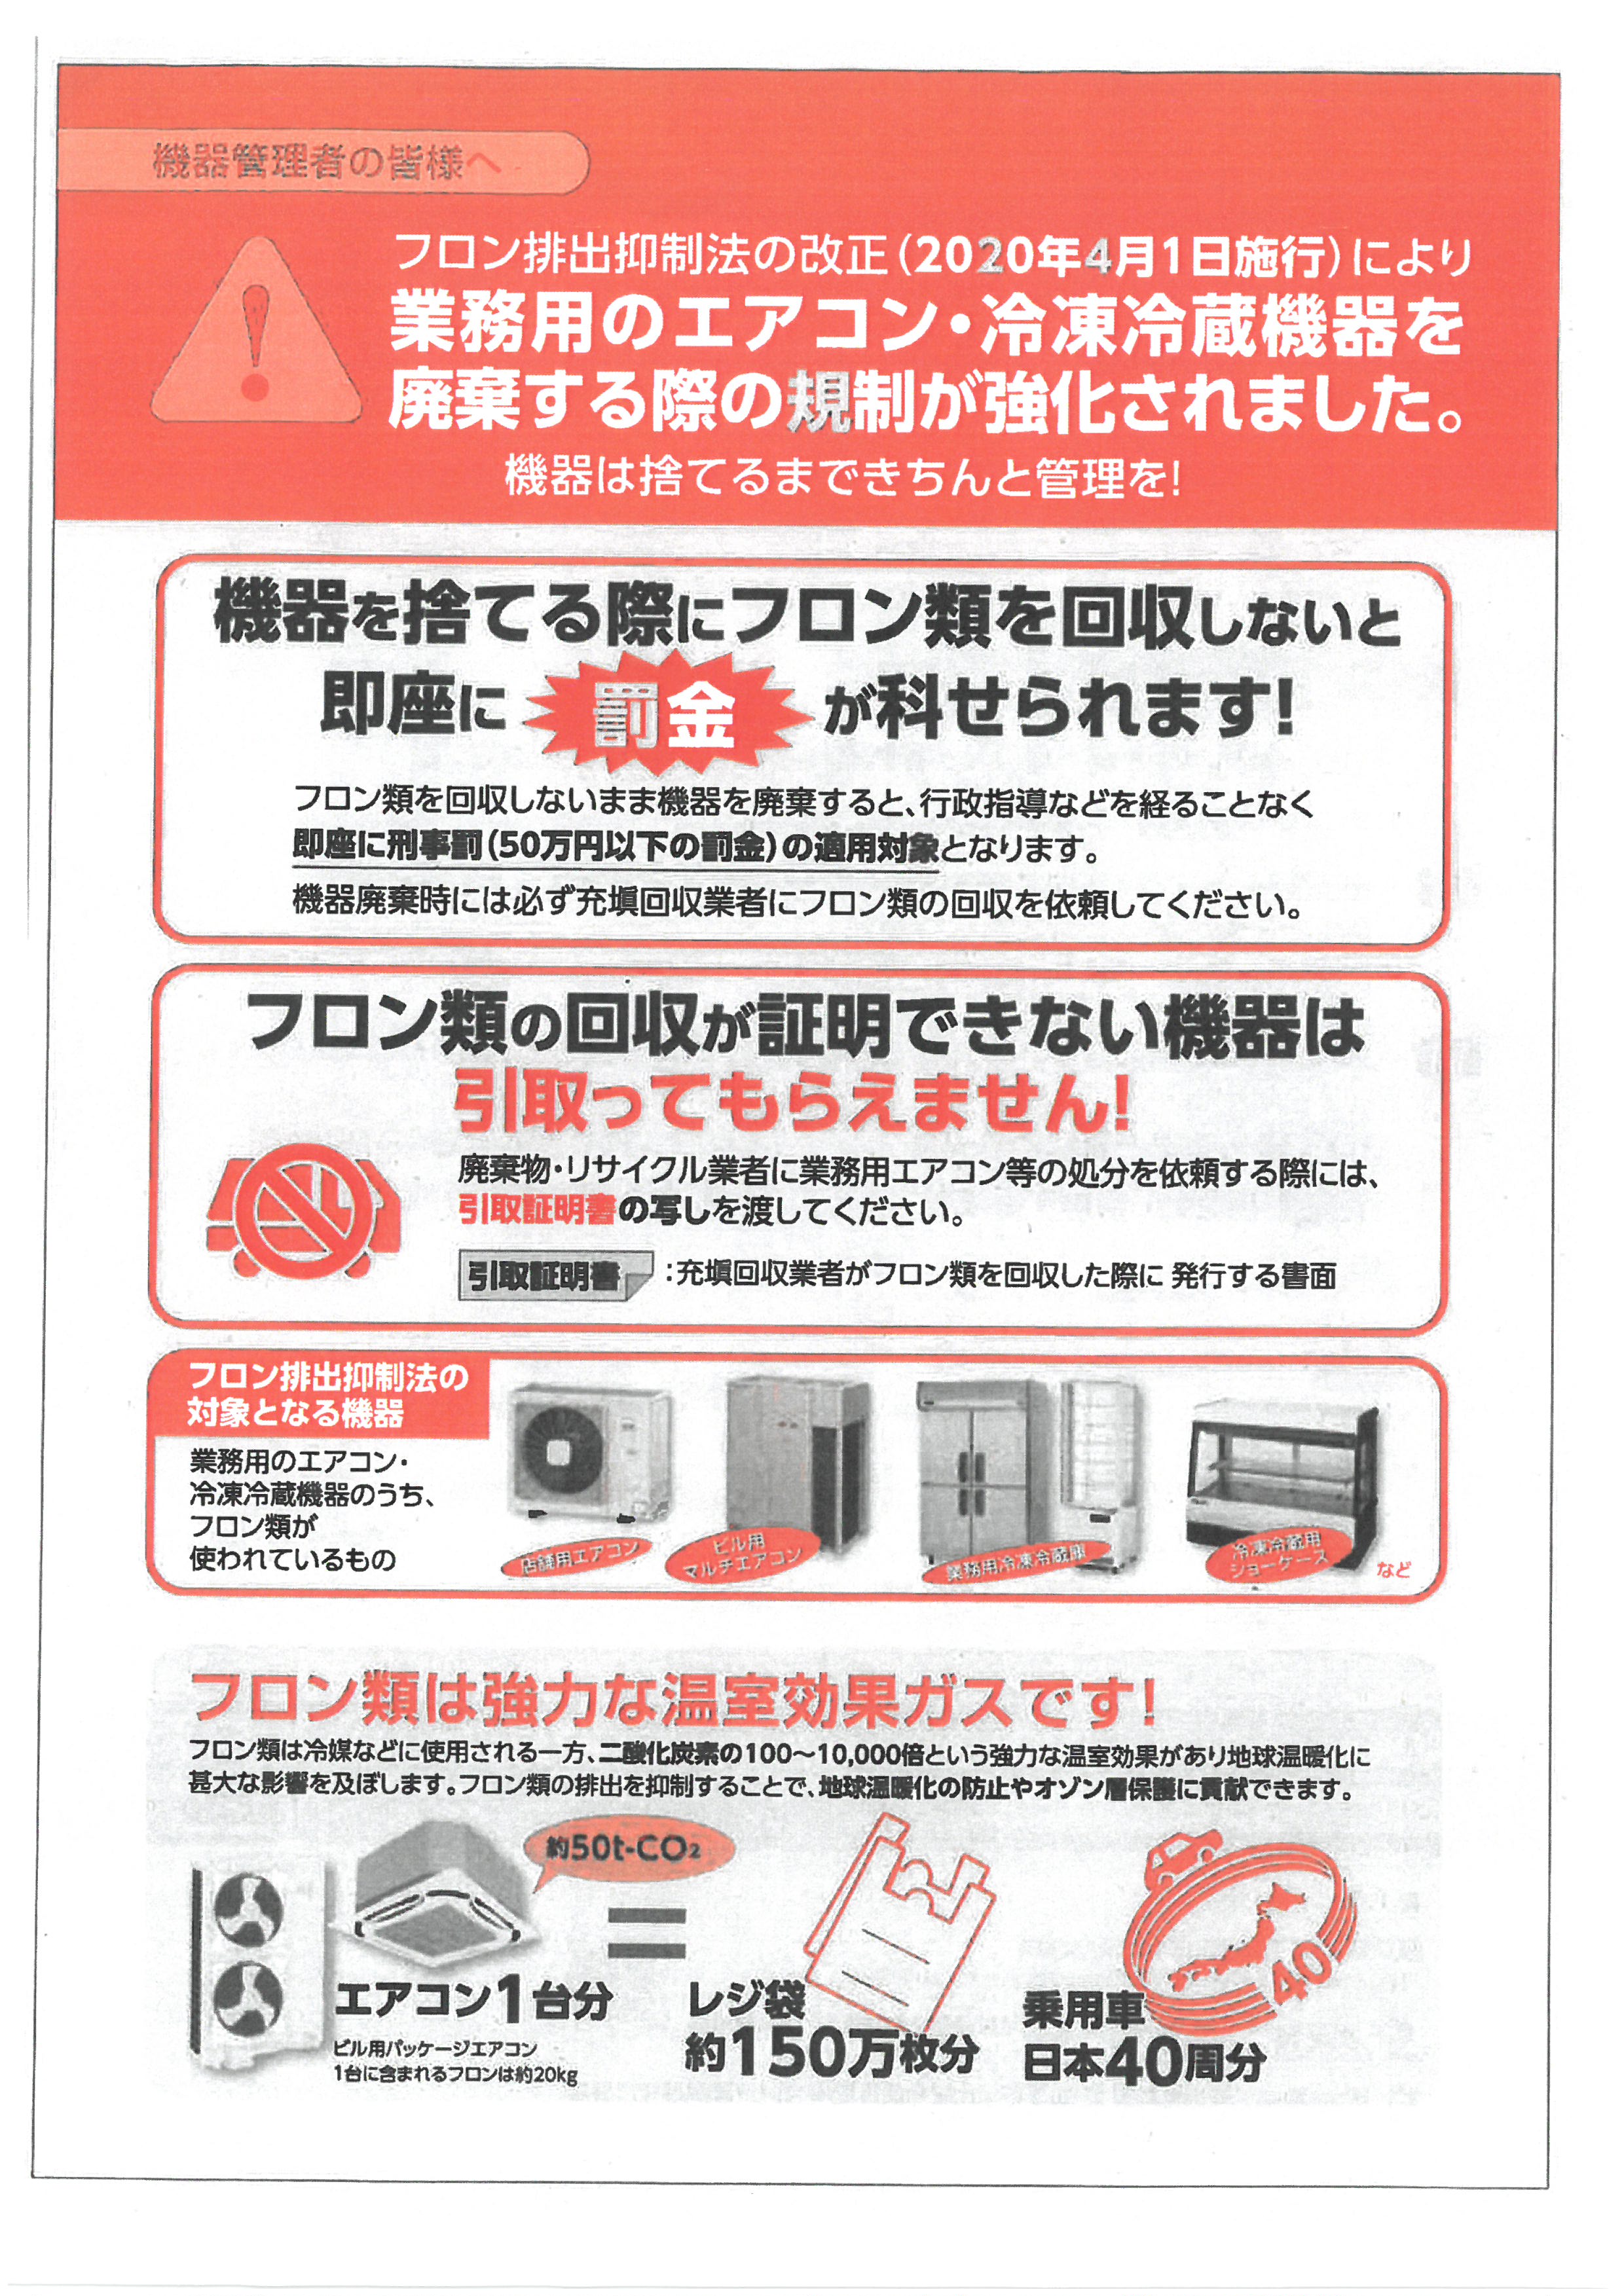 業務用のエアコン・冷凍冷蔵機器を廃棄する際の規制が強化されました！